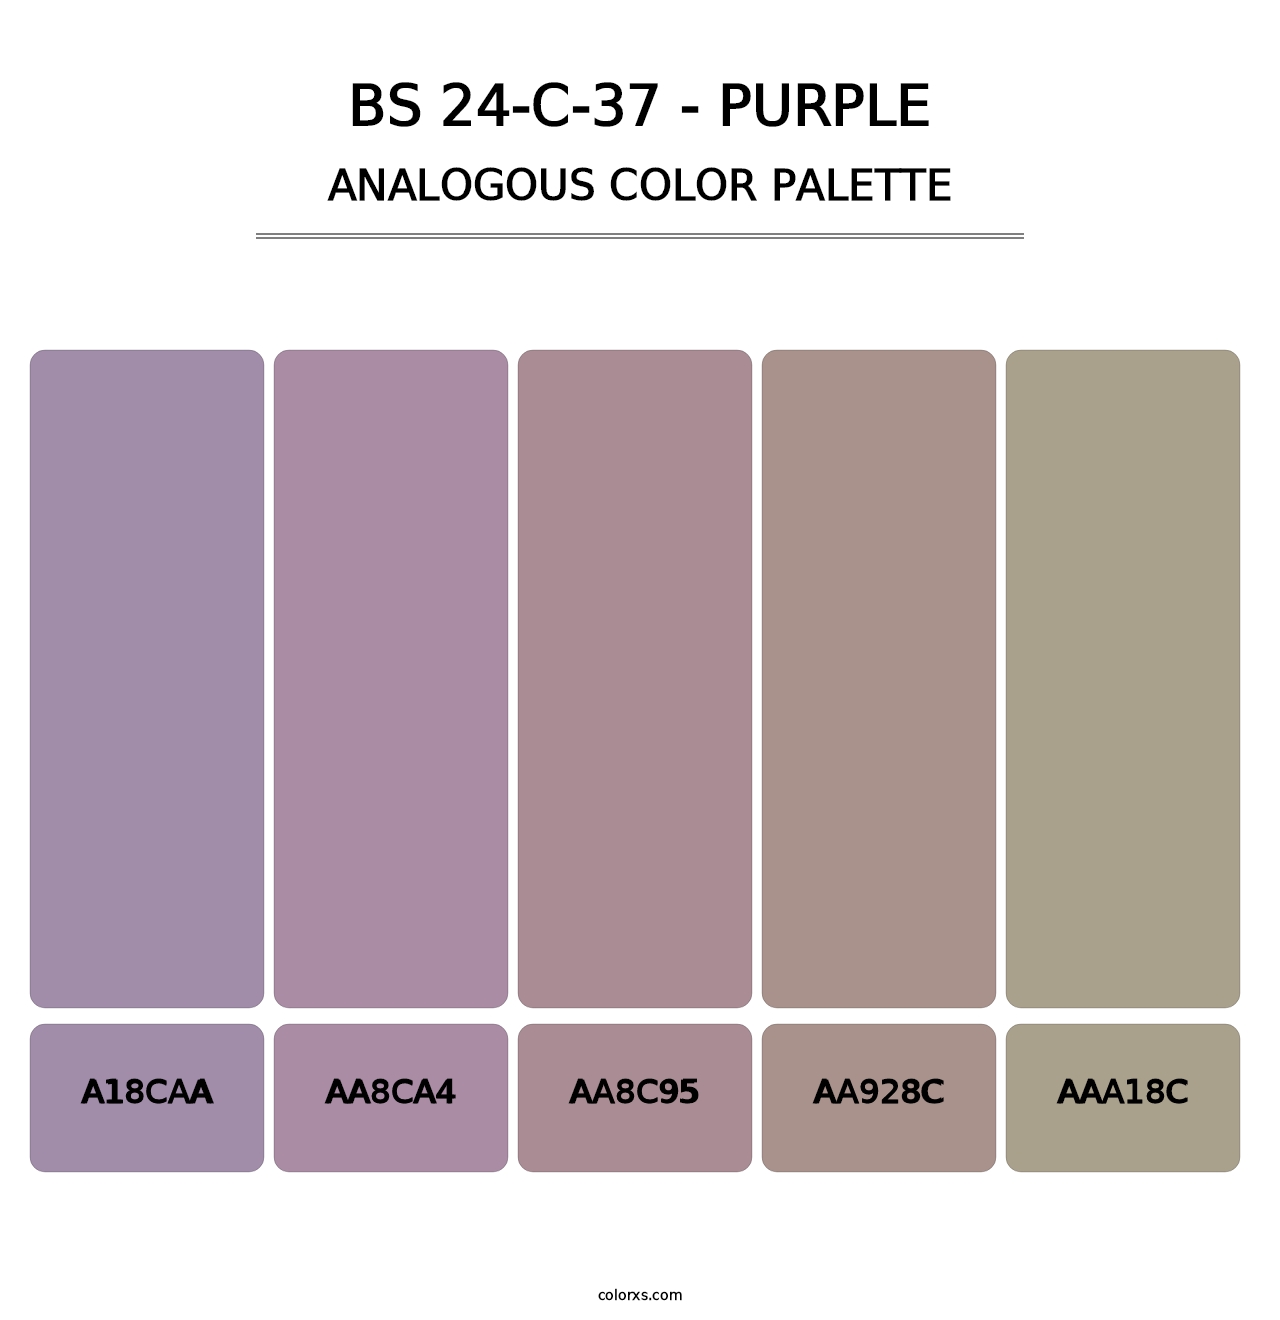 BS 24-C-37 - Purple - Analogous Color Palette